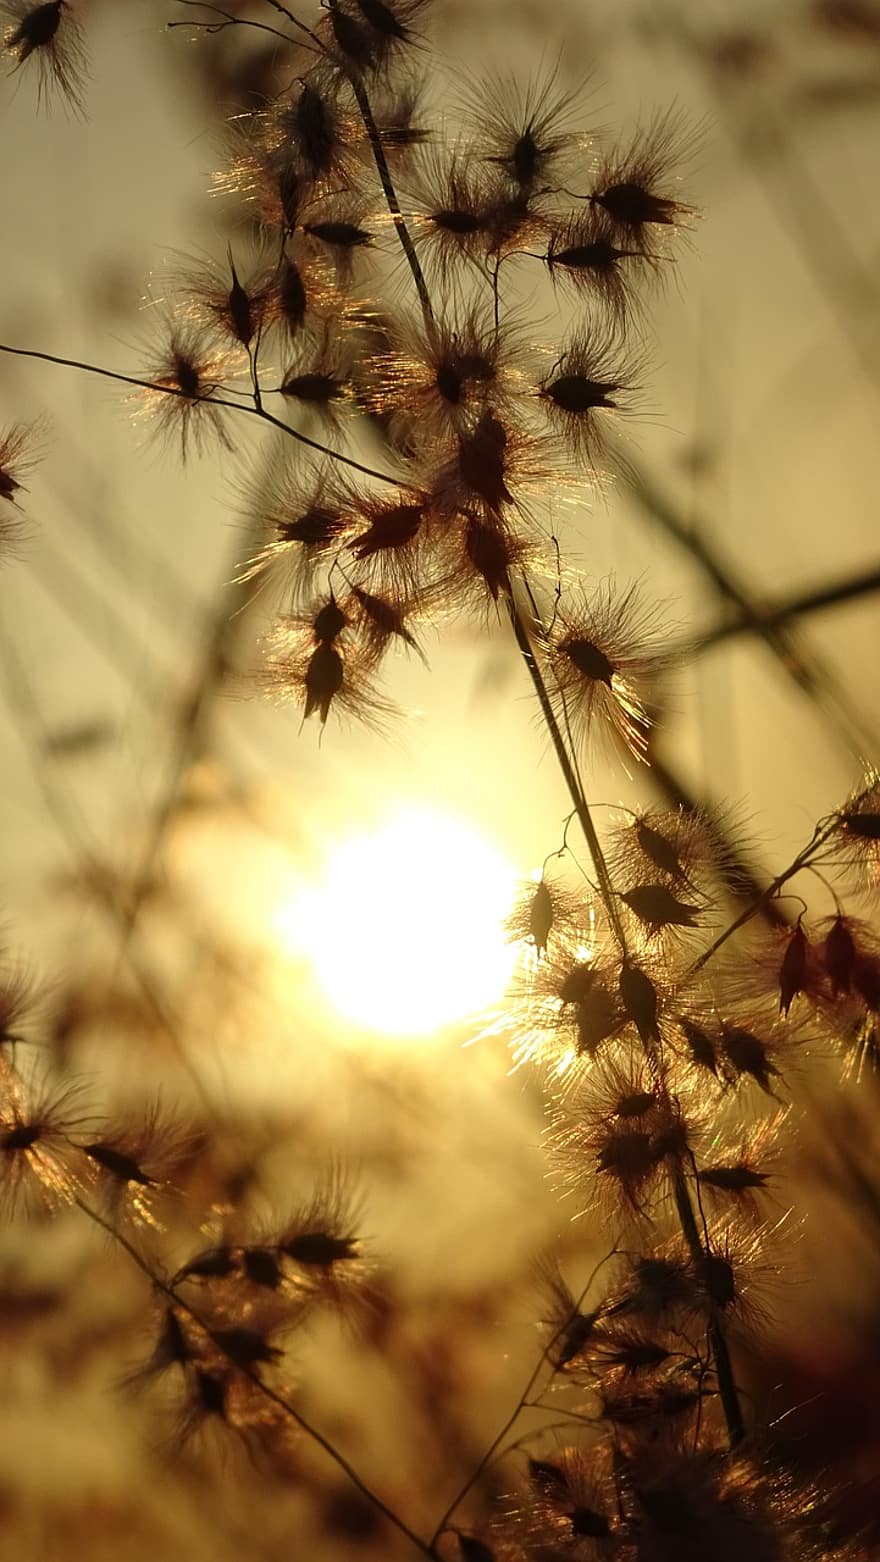 सूर्य का अस्त होना, घास का मैदान, जंगली फूल, क्यूबा, मैदान